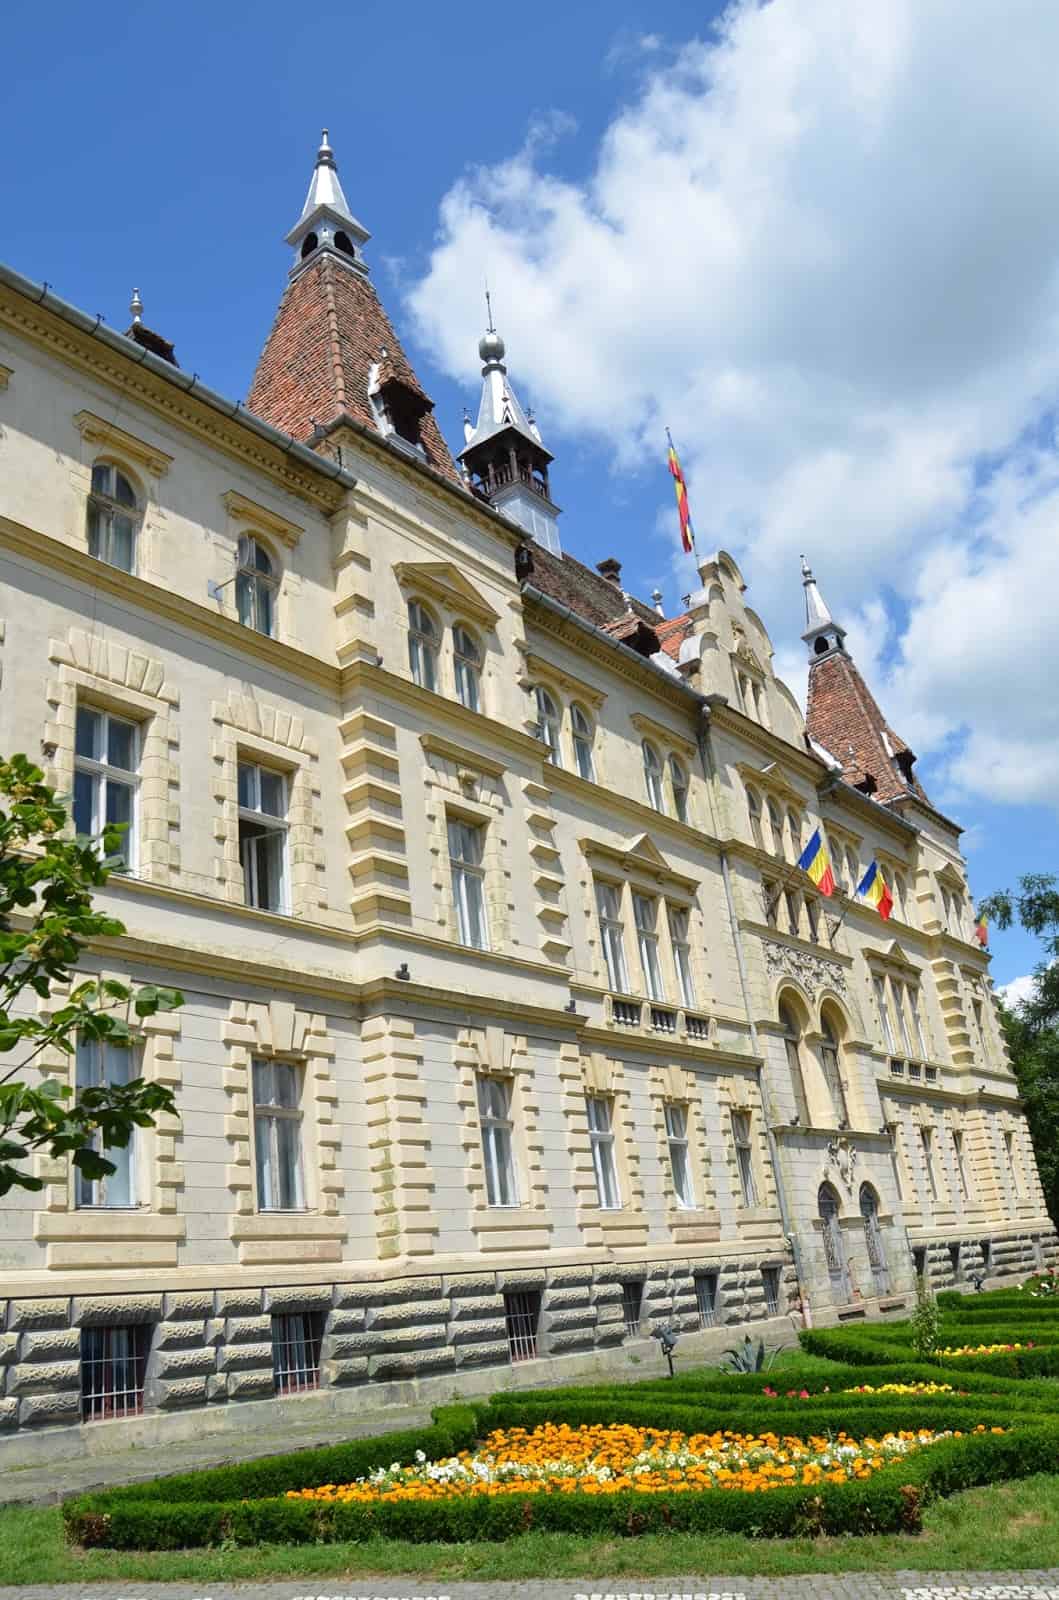 Sighișoara Town Hall in Sighişoara, Romania